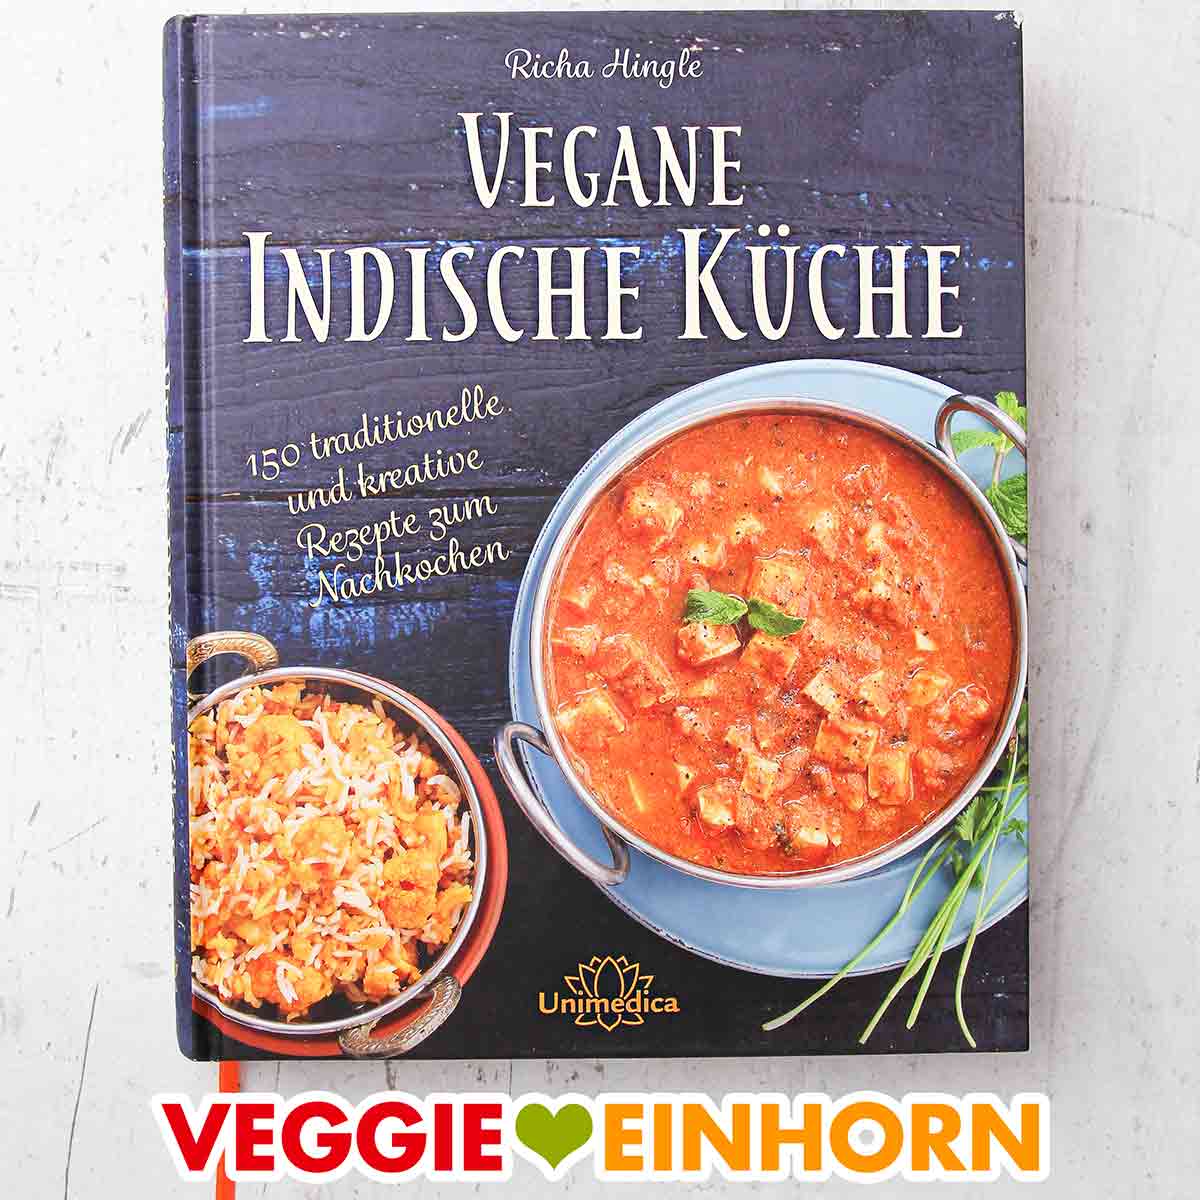 Indisch vegetarisch Inkl 1x1 der traditionellen Zubereitung von Fladenbrot und Reis DAS Indien Kochbuch 90 vegetarische und vegane Rezepte aus ganz Indien DAS authentische Indien Kochbuch